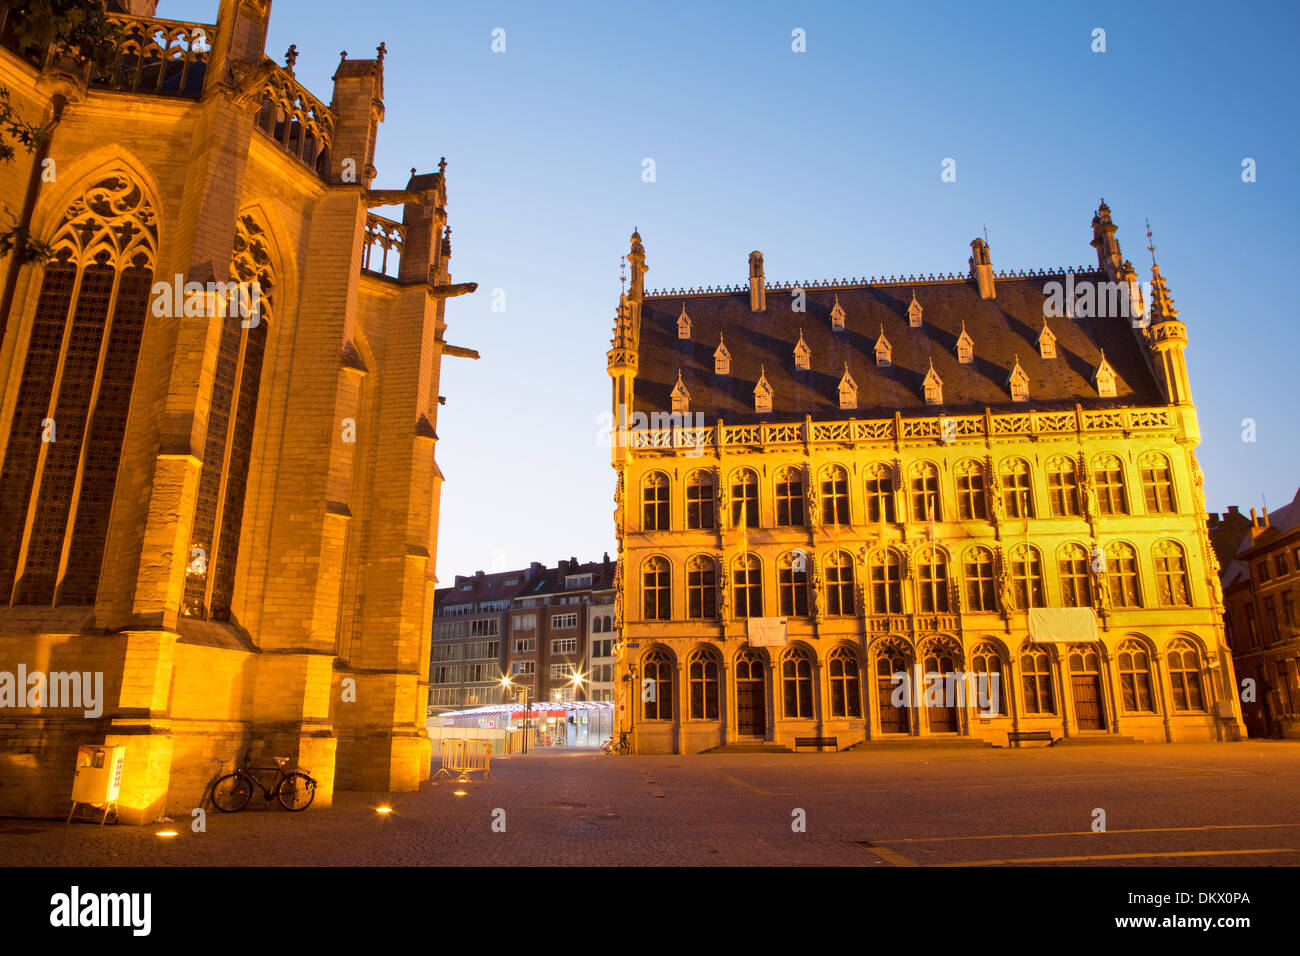 Leuven - Gothic town hall at dusk Stock Photo